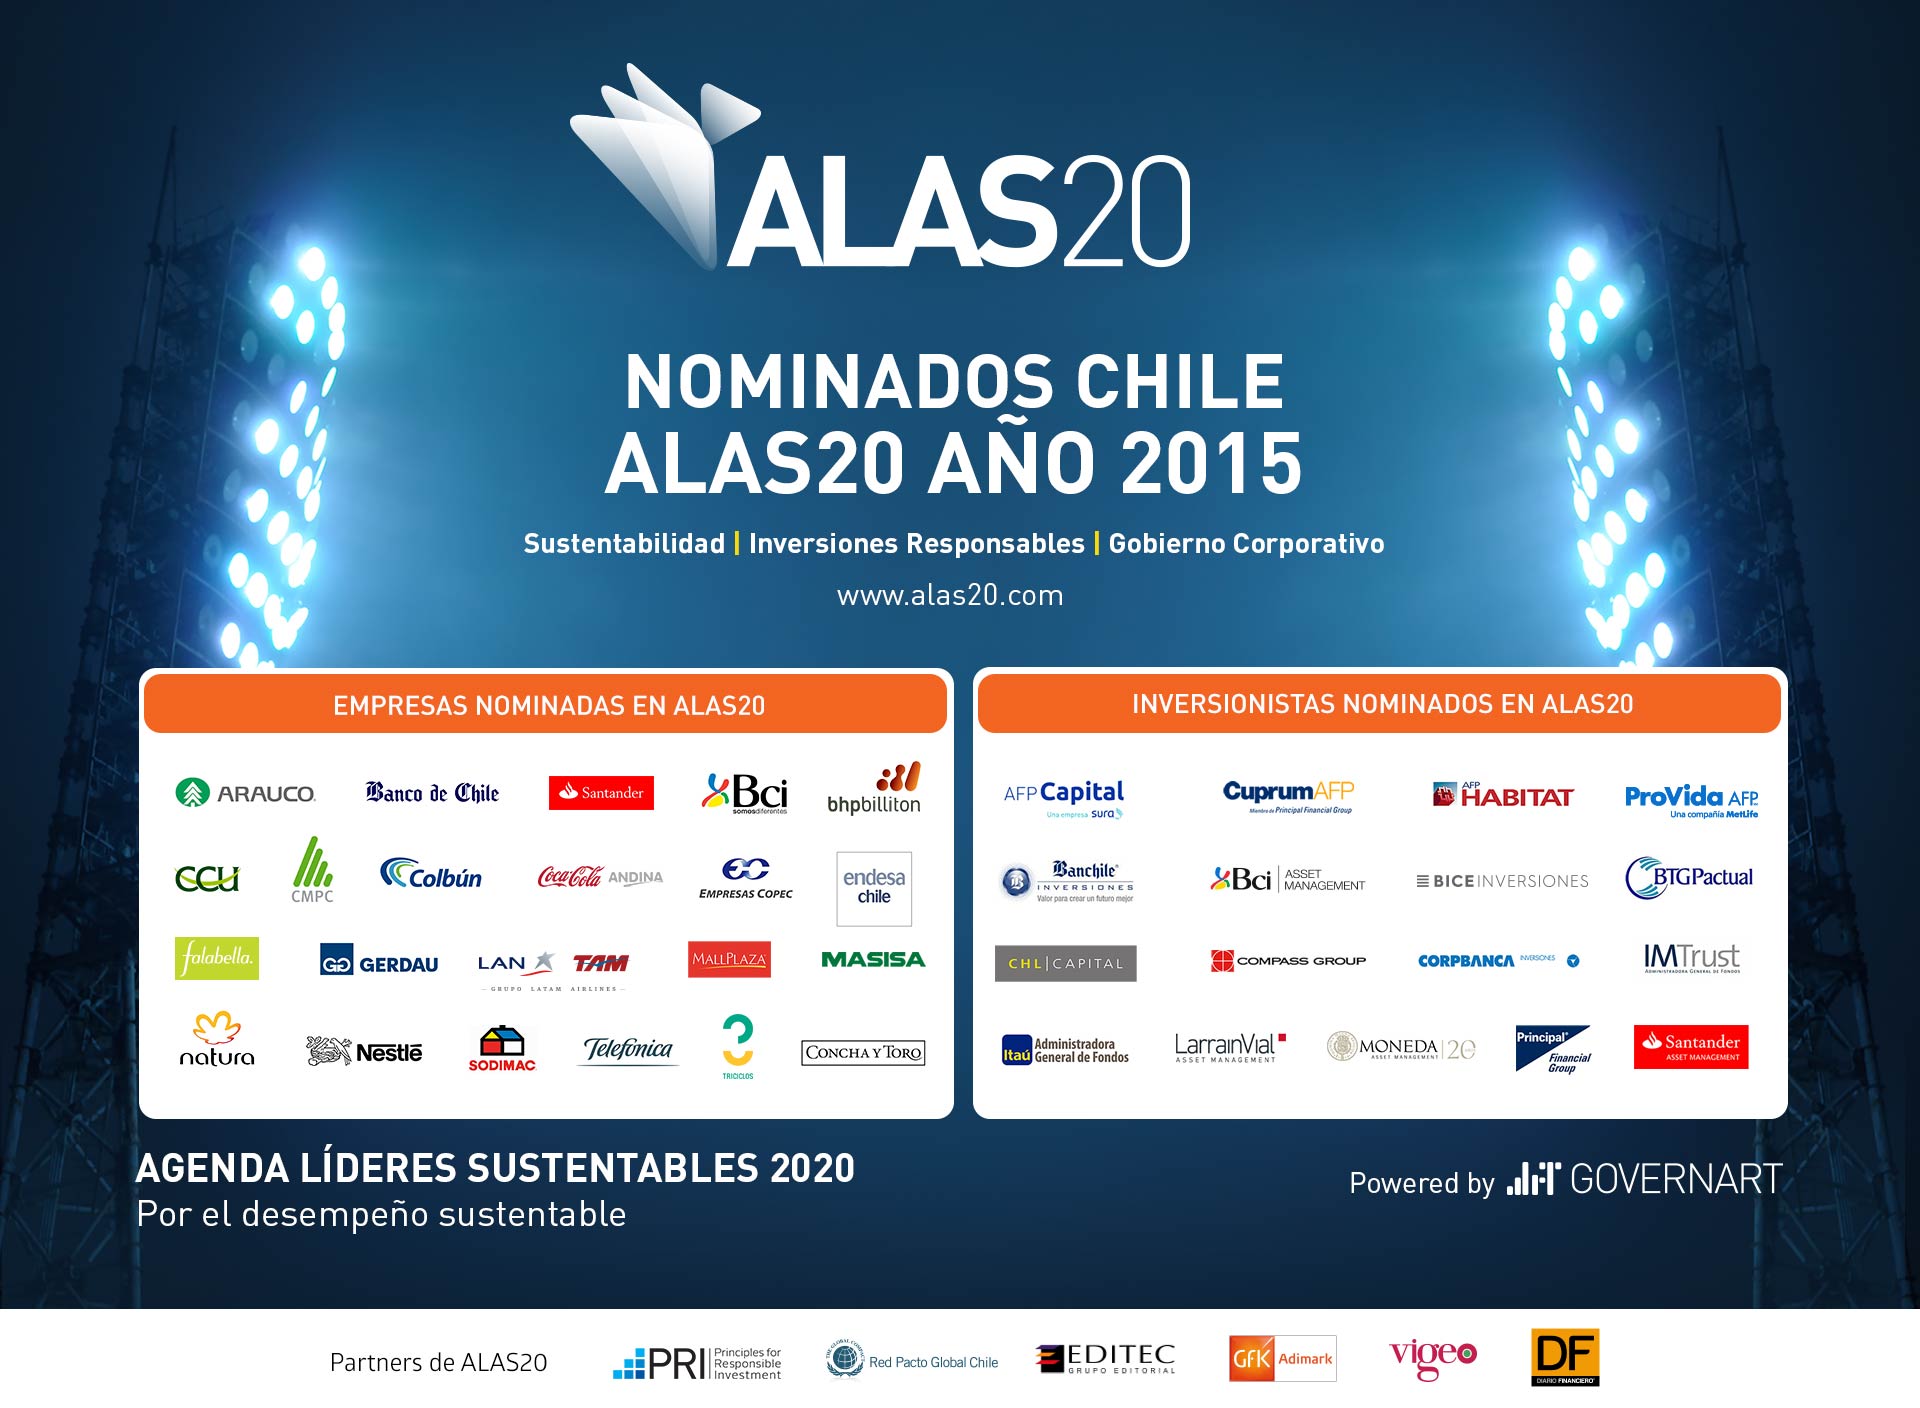 Nominados ALAS20 año 2015